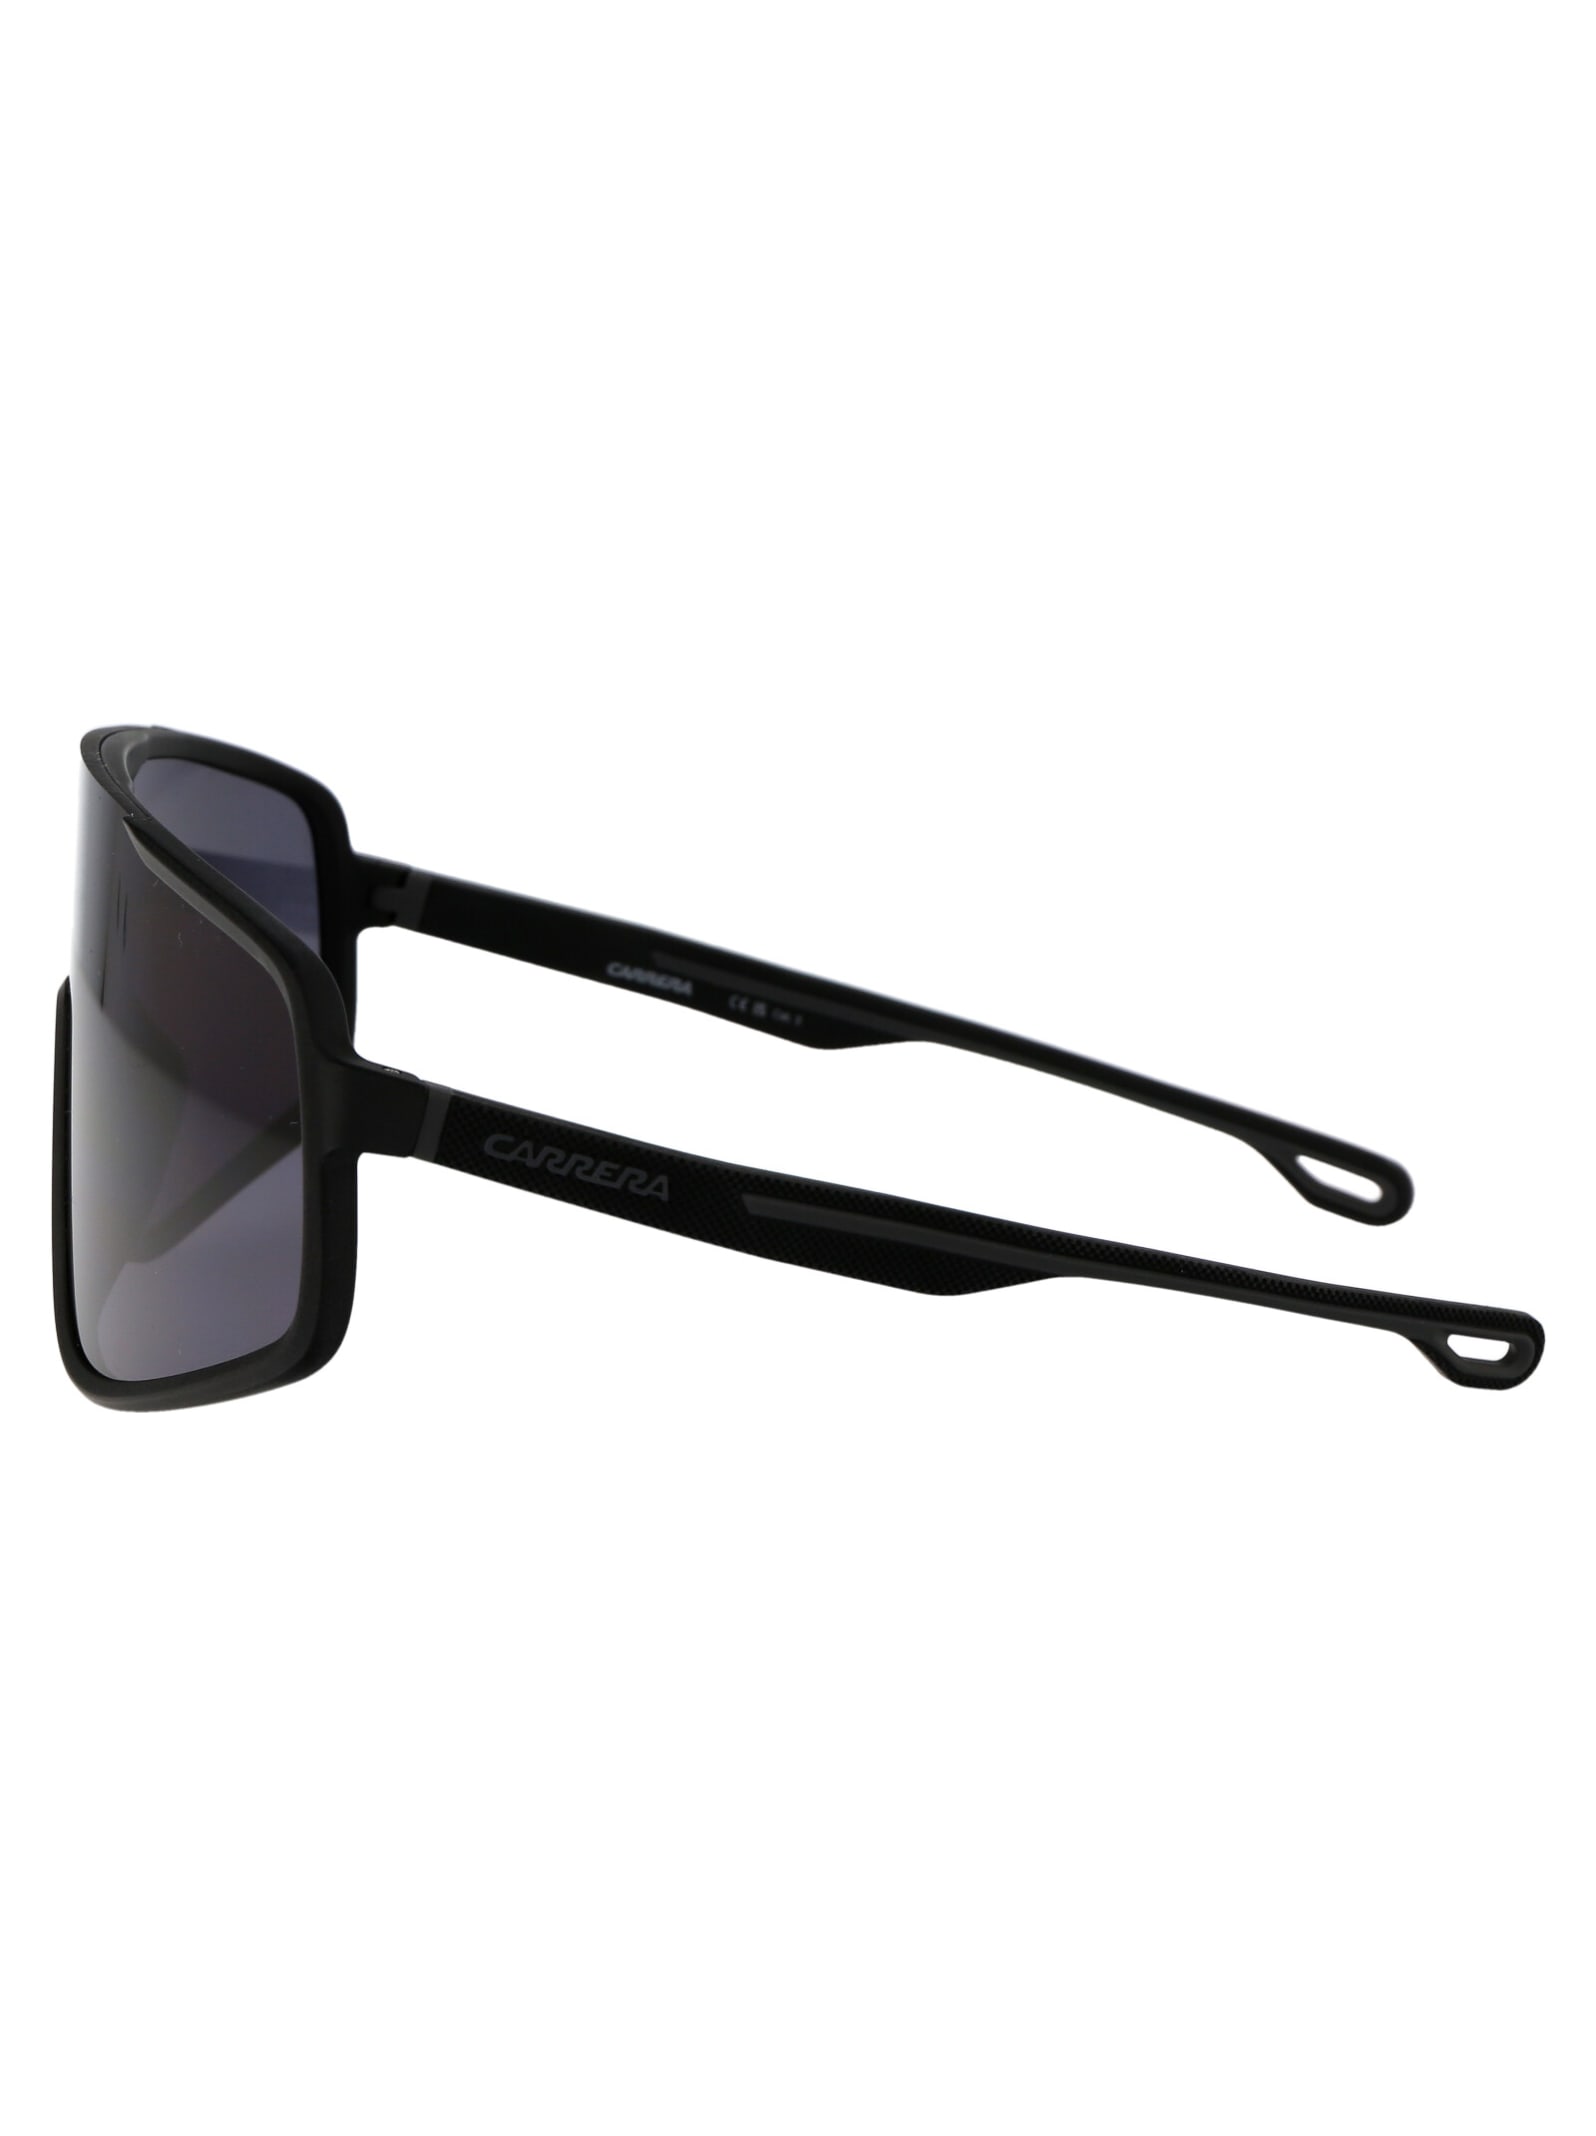 Shop Carrera 4017/s Sunglasses In 003ir Mtt Black